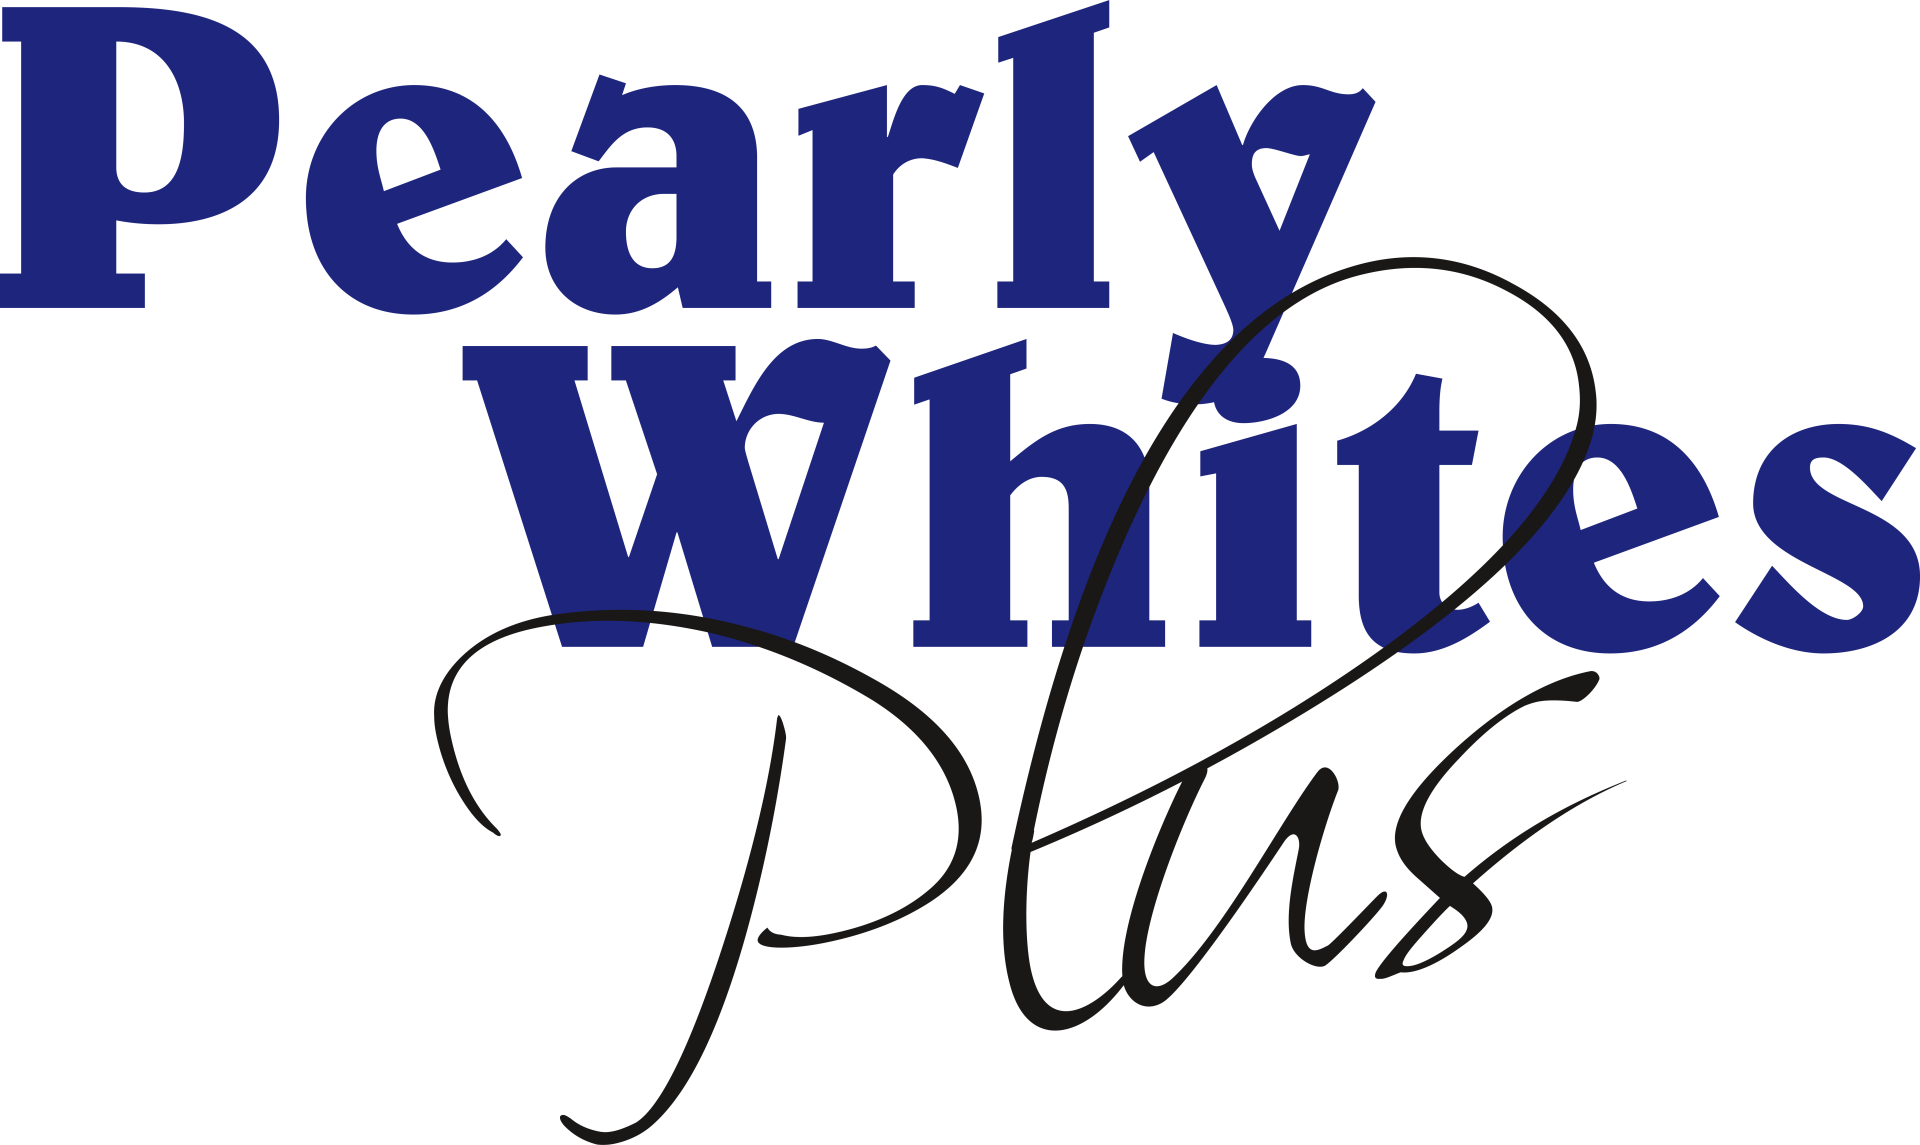 Pearly Whites Plus